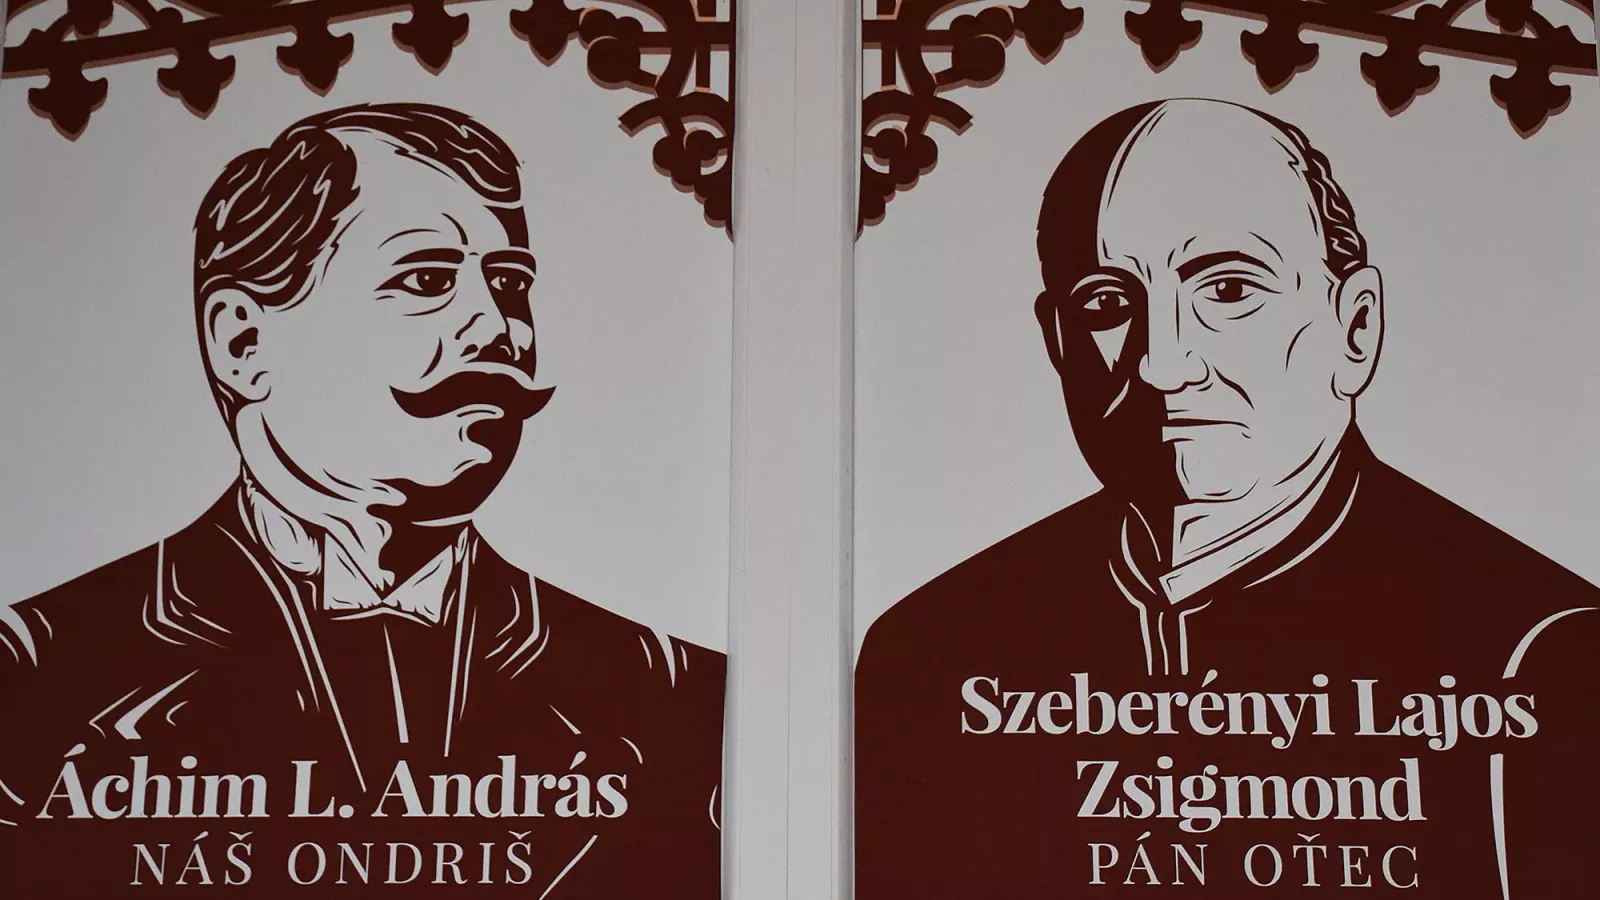 Áchim L. András és Szeberényi Lajos Zsigmond portréja – Fotó: behir.hu/Such Tamás